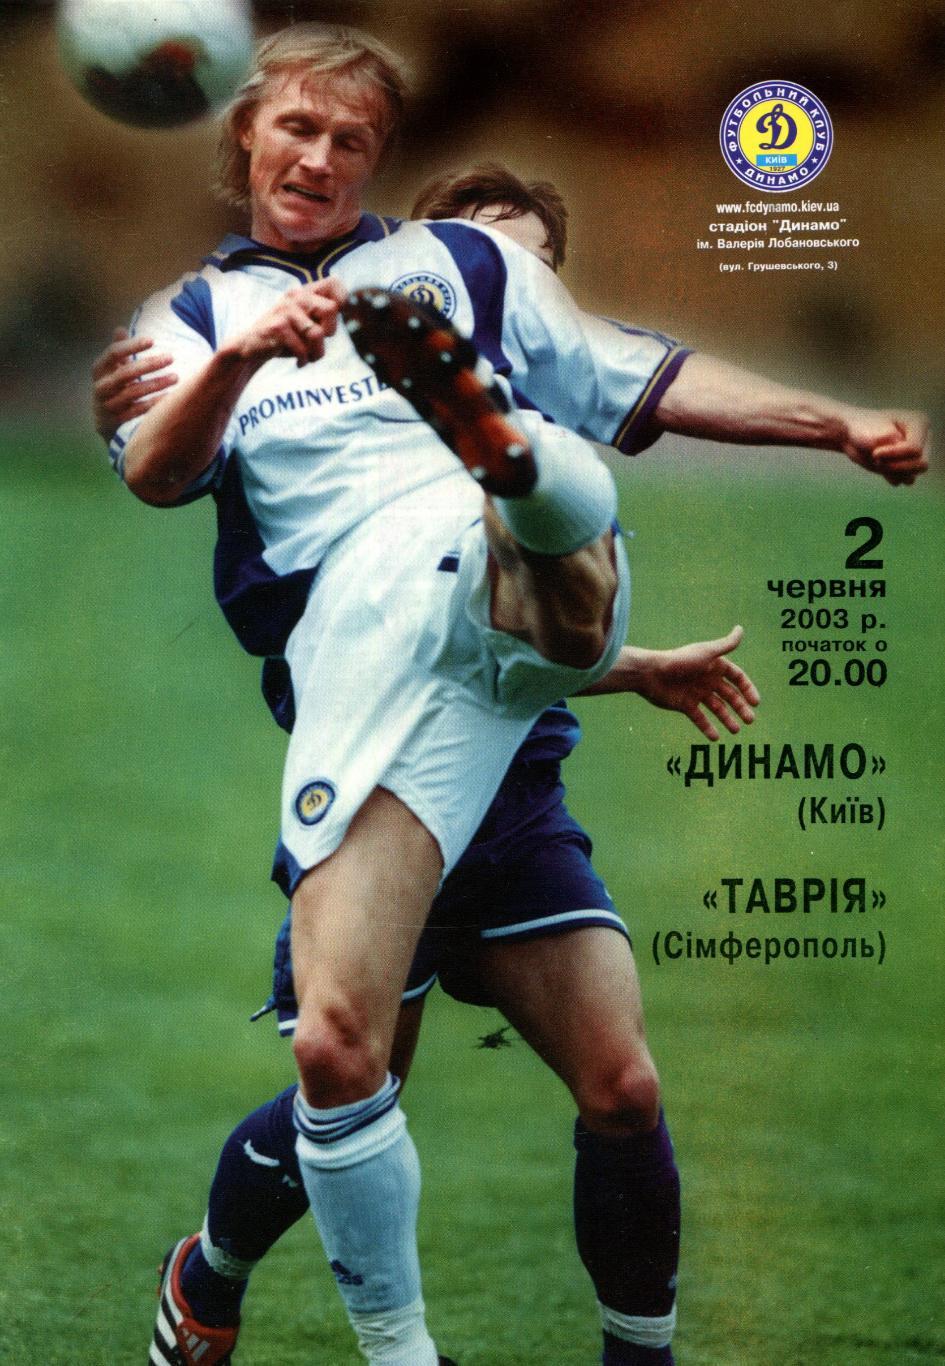 Динамо Киев - Таврия Симферополь 2003